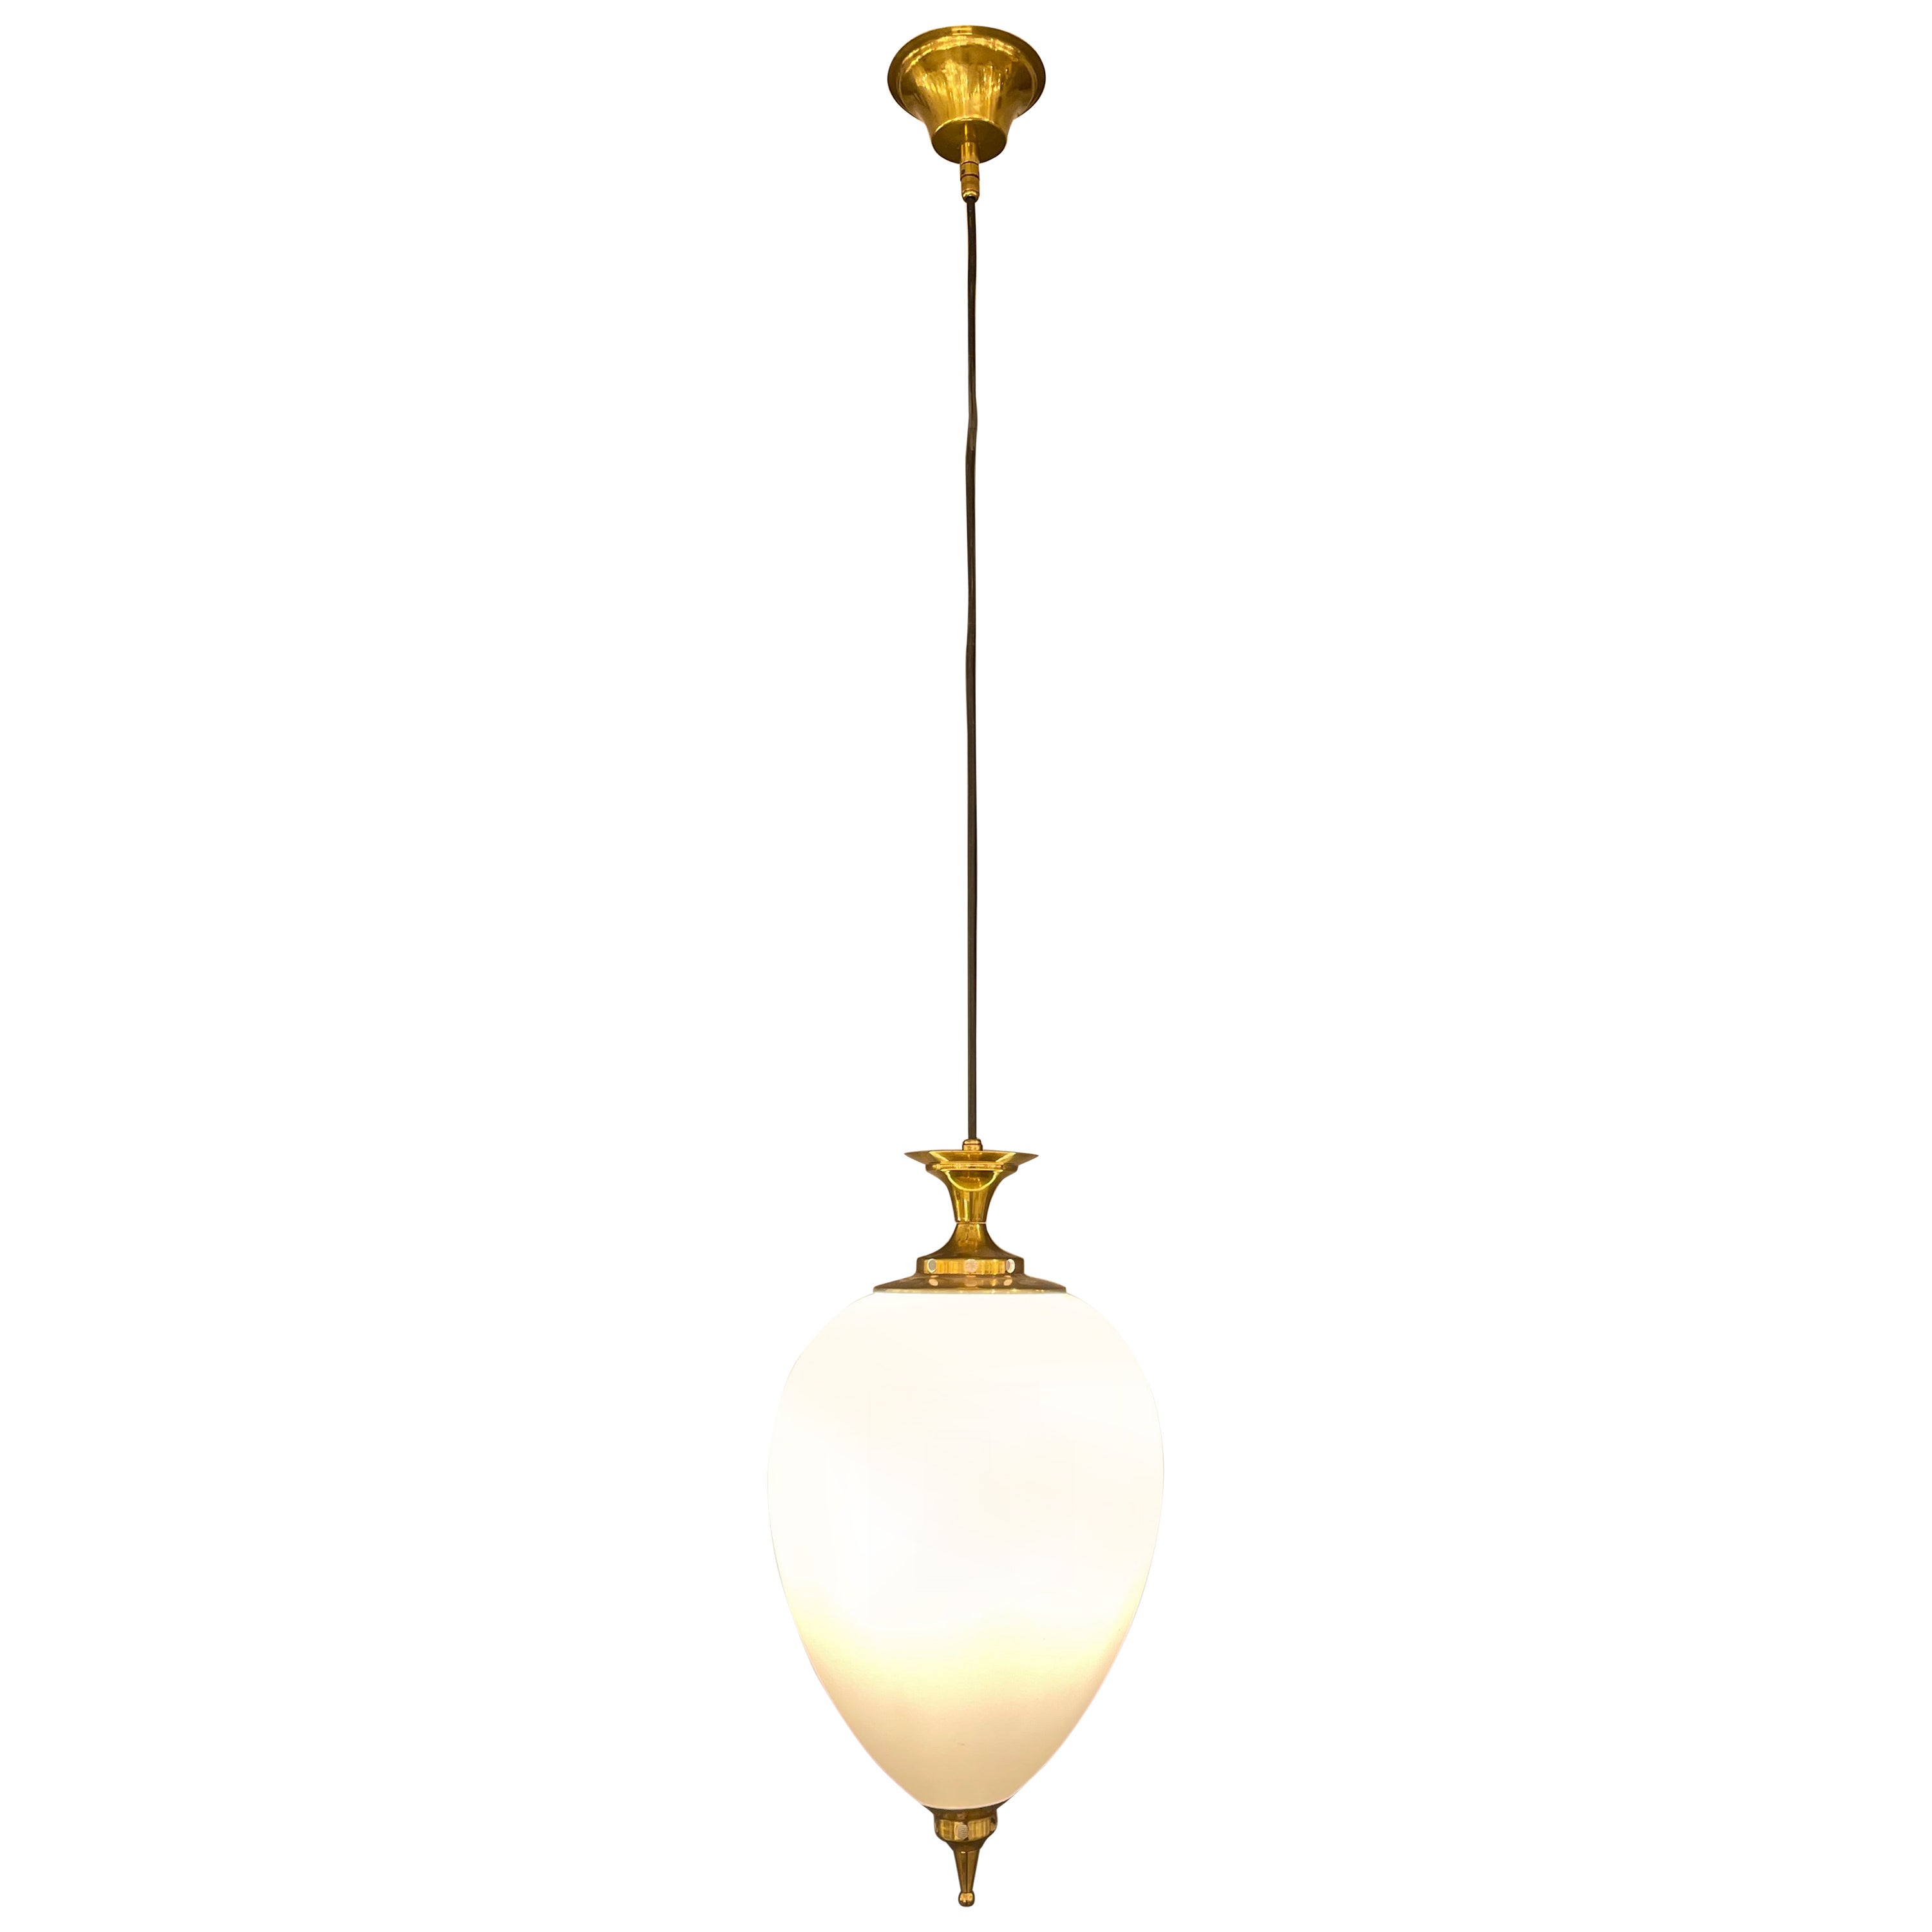 Italian Hanging Lamp in Brass and Murano Glass, circa 1950s